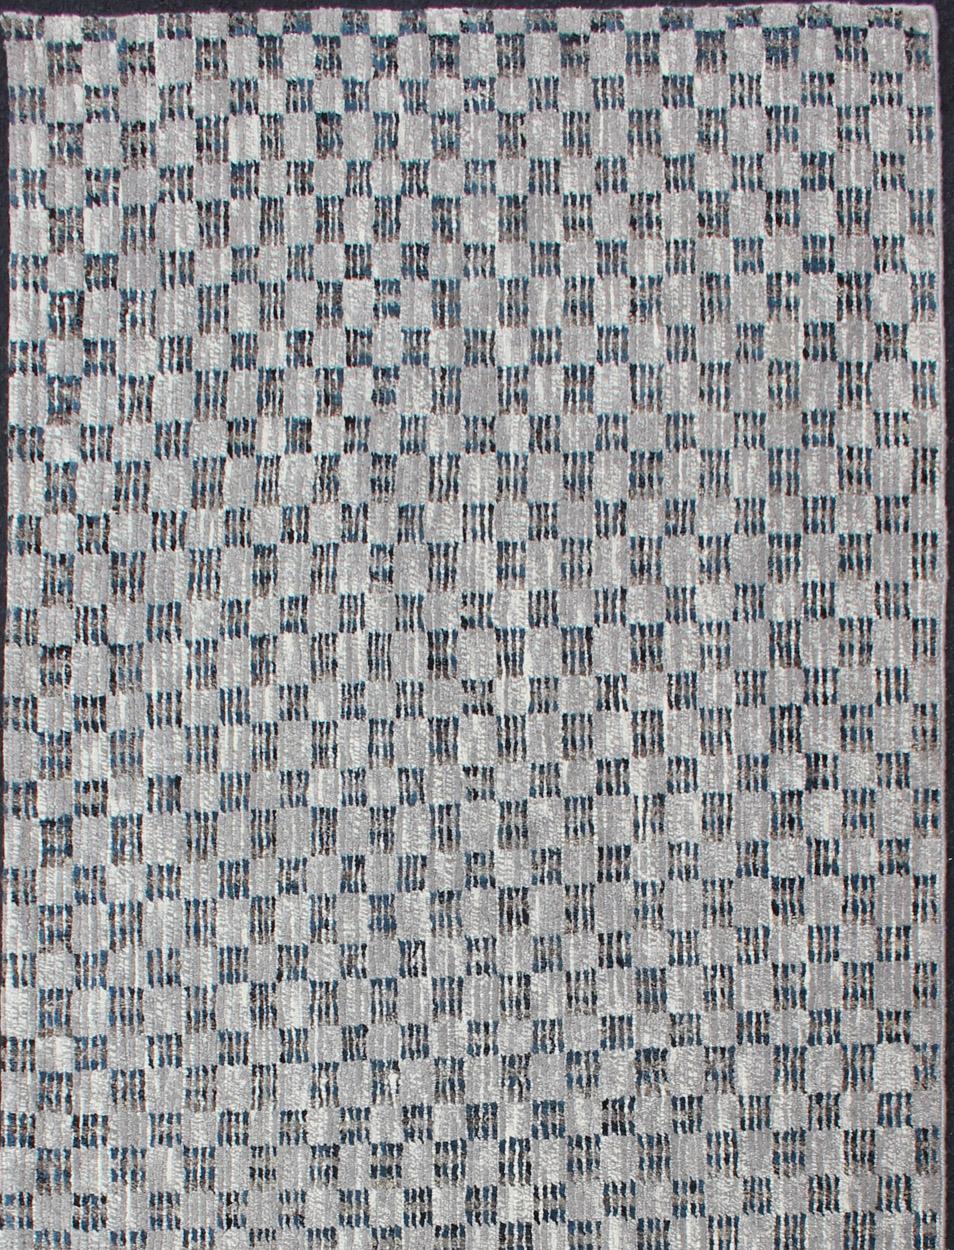 Moderner Florteppich mit Schachbrettmuster in Blau und Grau, Teppich/OB-955670, Herkunftsland/Typ: Indien/ Geflochten, Zustand: neu

Dieser brandneue Teppich zeichnet sich durch ein modernes Schachbrettmuster und eine Kombination aus grauen und